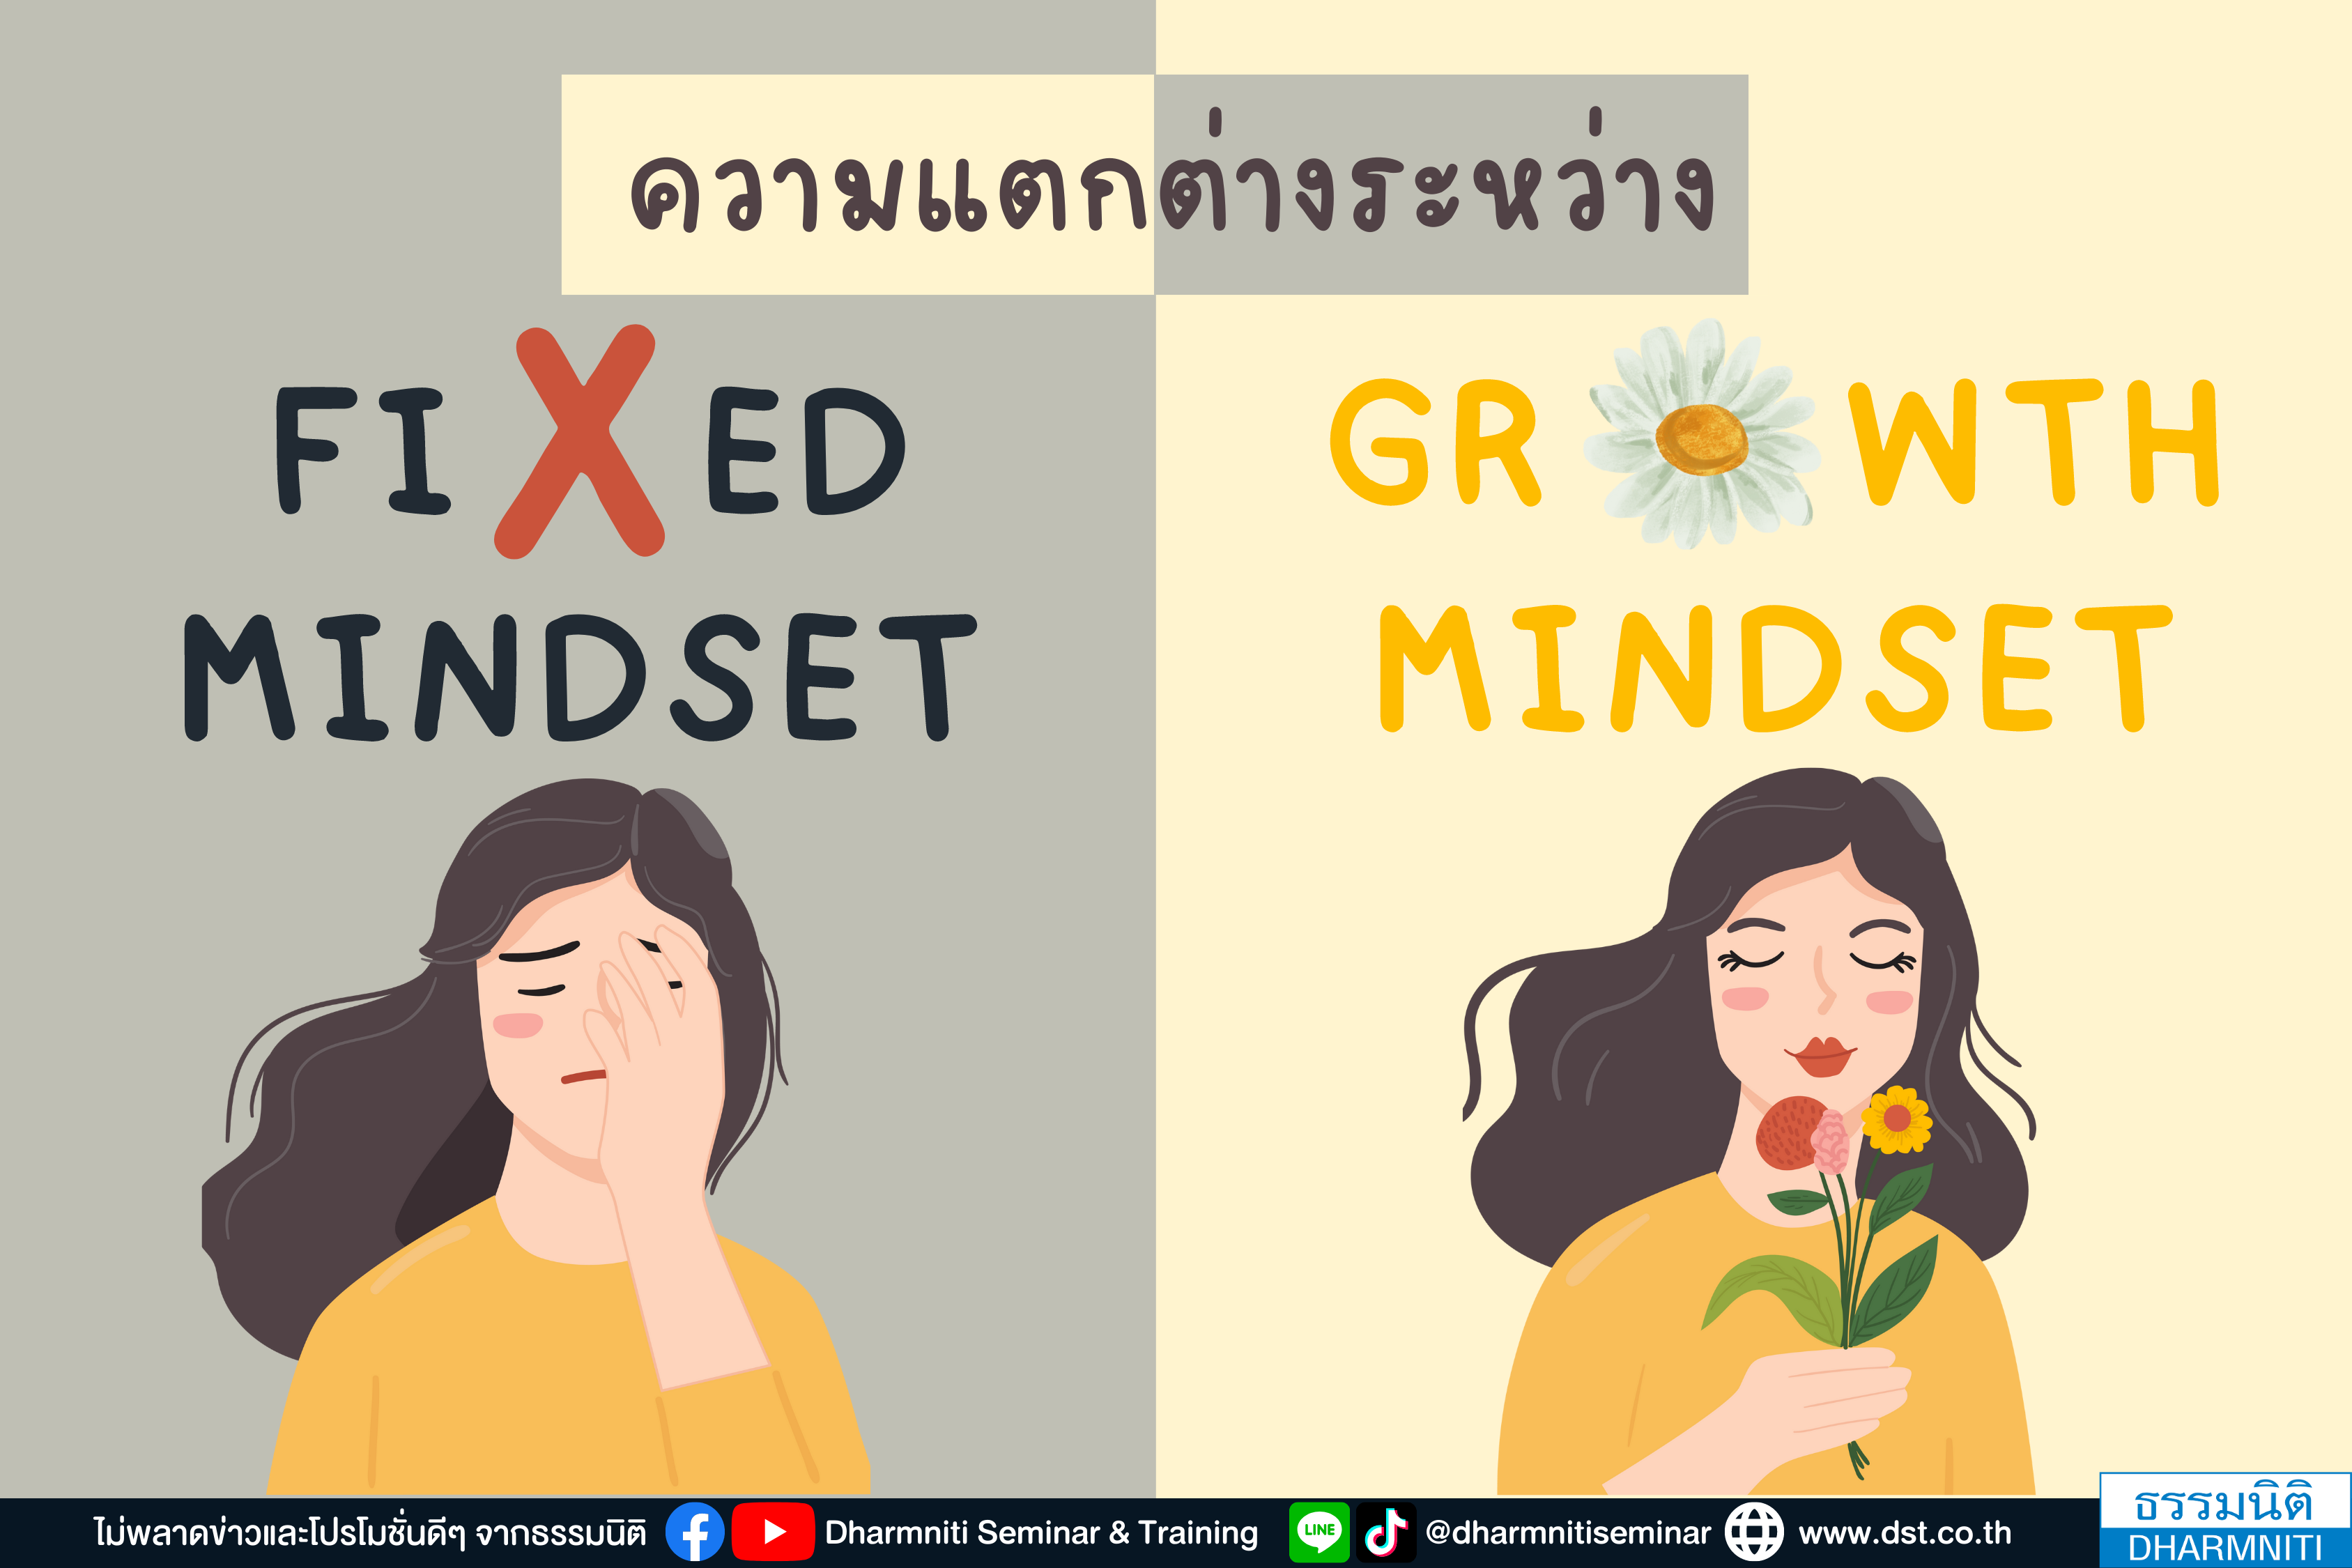 ความแตกต่างระหว่าง fixed mindset vs growth mindset